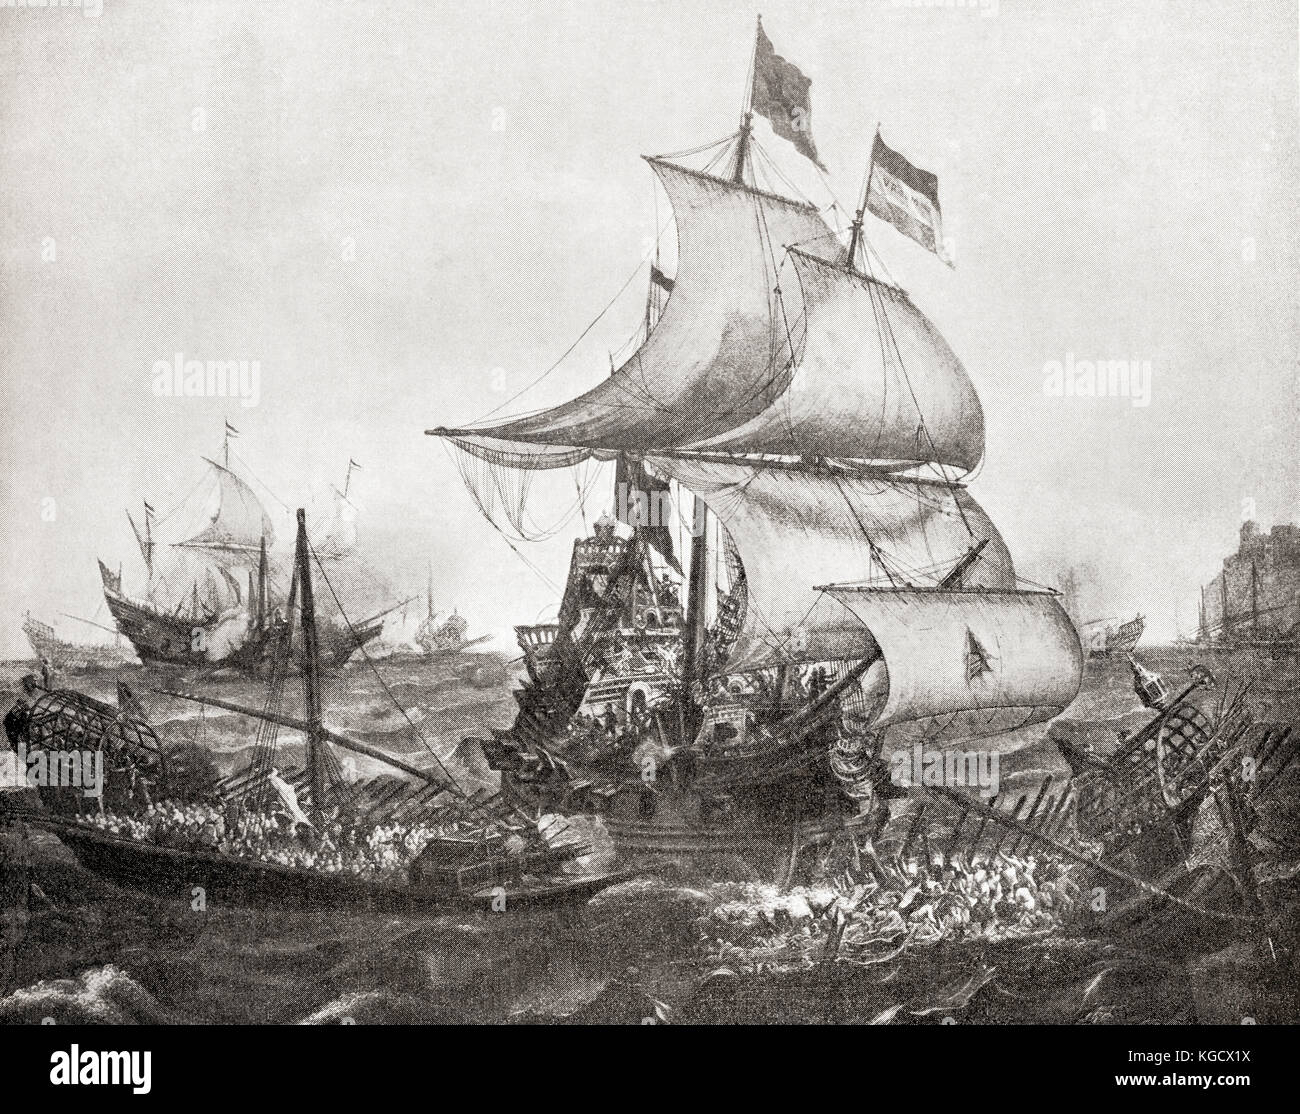 Bataille navale de Gibraltar, 25 avril 1607. Une flotte néerlandaise surprit et engagea une flotte espagnole ancrée dans la baie de Gibraltar, au cours de laquelle la plupart des navires espagnols furent détruits. Extrait de l'Histoire des Nations de Hutchinson, publié en 1915. Banque D'Images